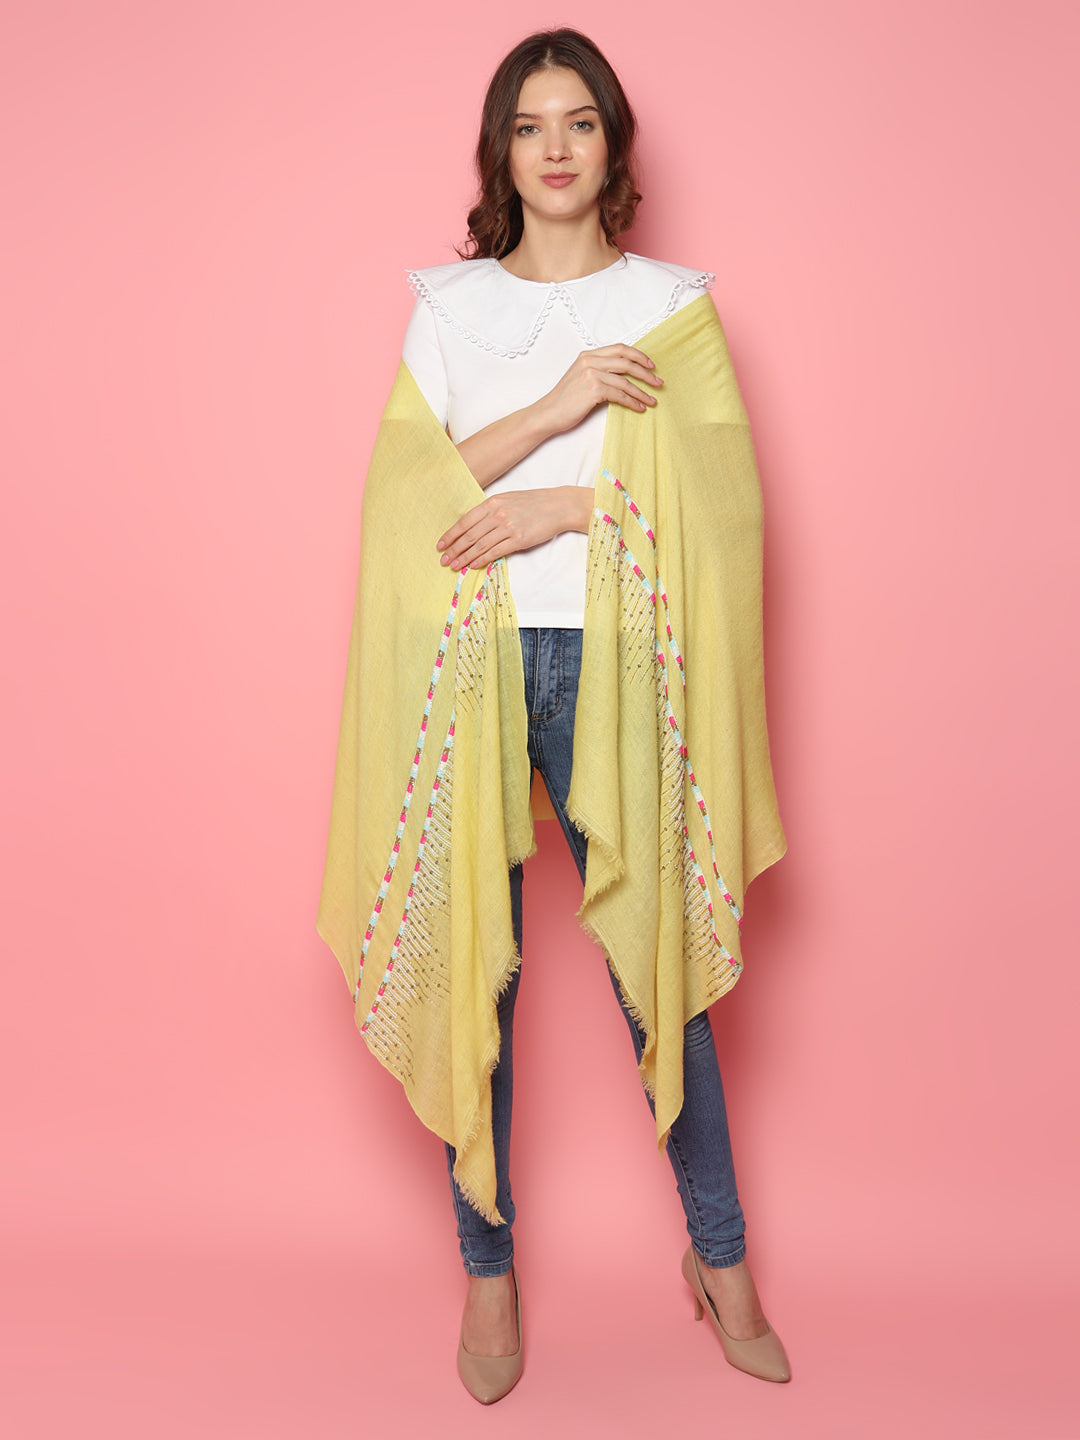 cashmere shawls online, pure pashmina shawls online, online shawls, kashmiri shawls, stoles online, shawls shopping 